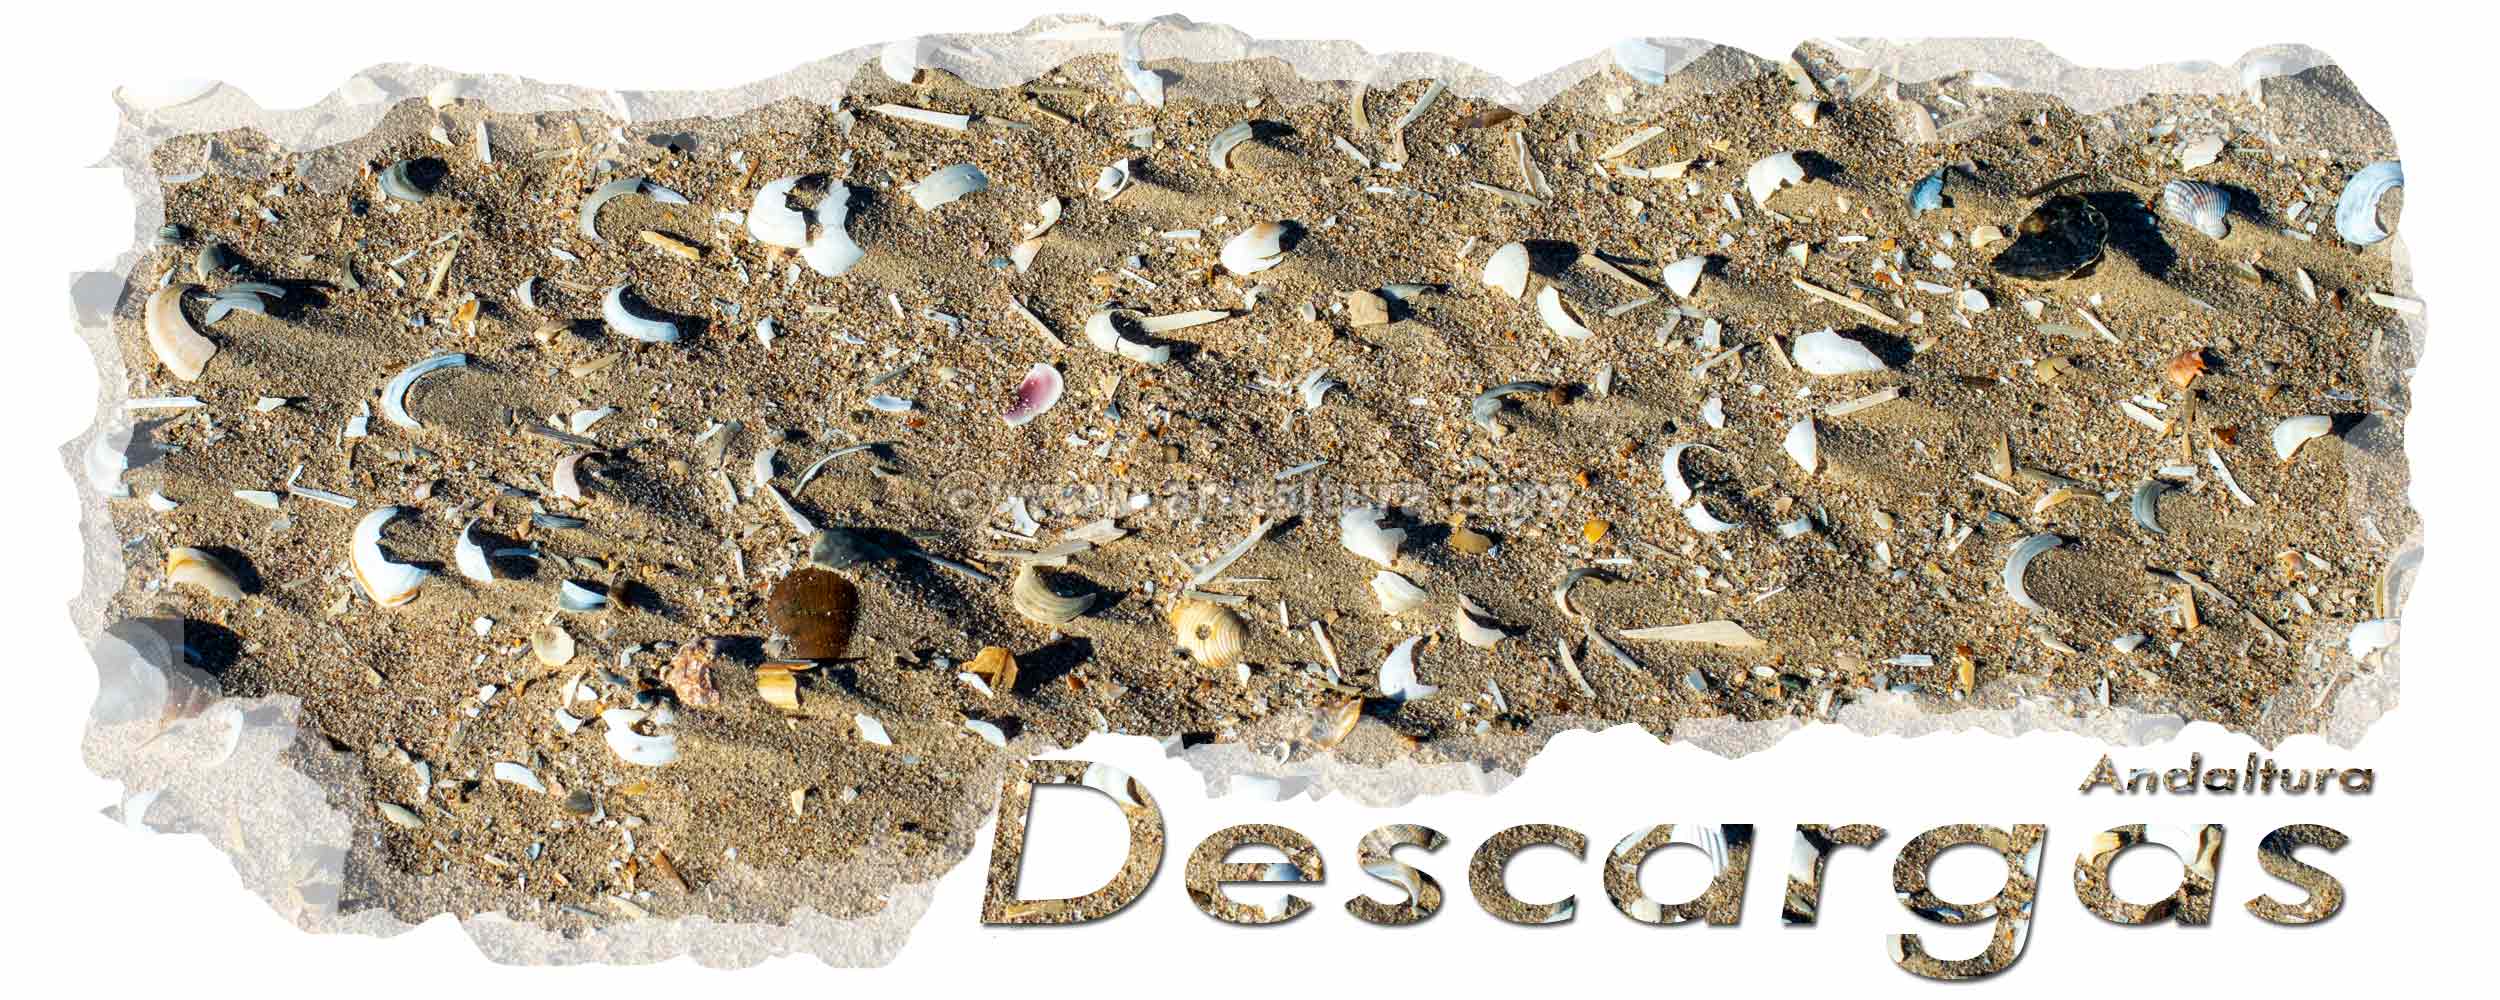 Conchas en arena de playa - Cabecera de Descargas de archivos de Andaltura